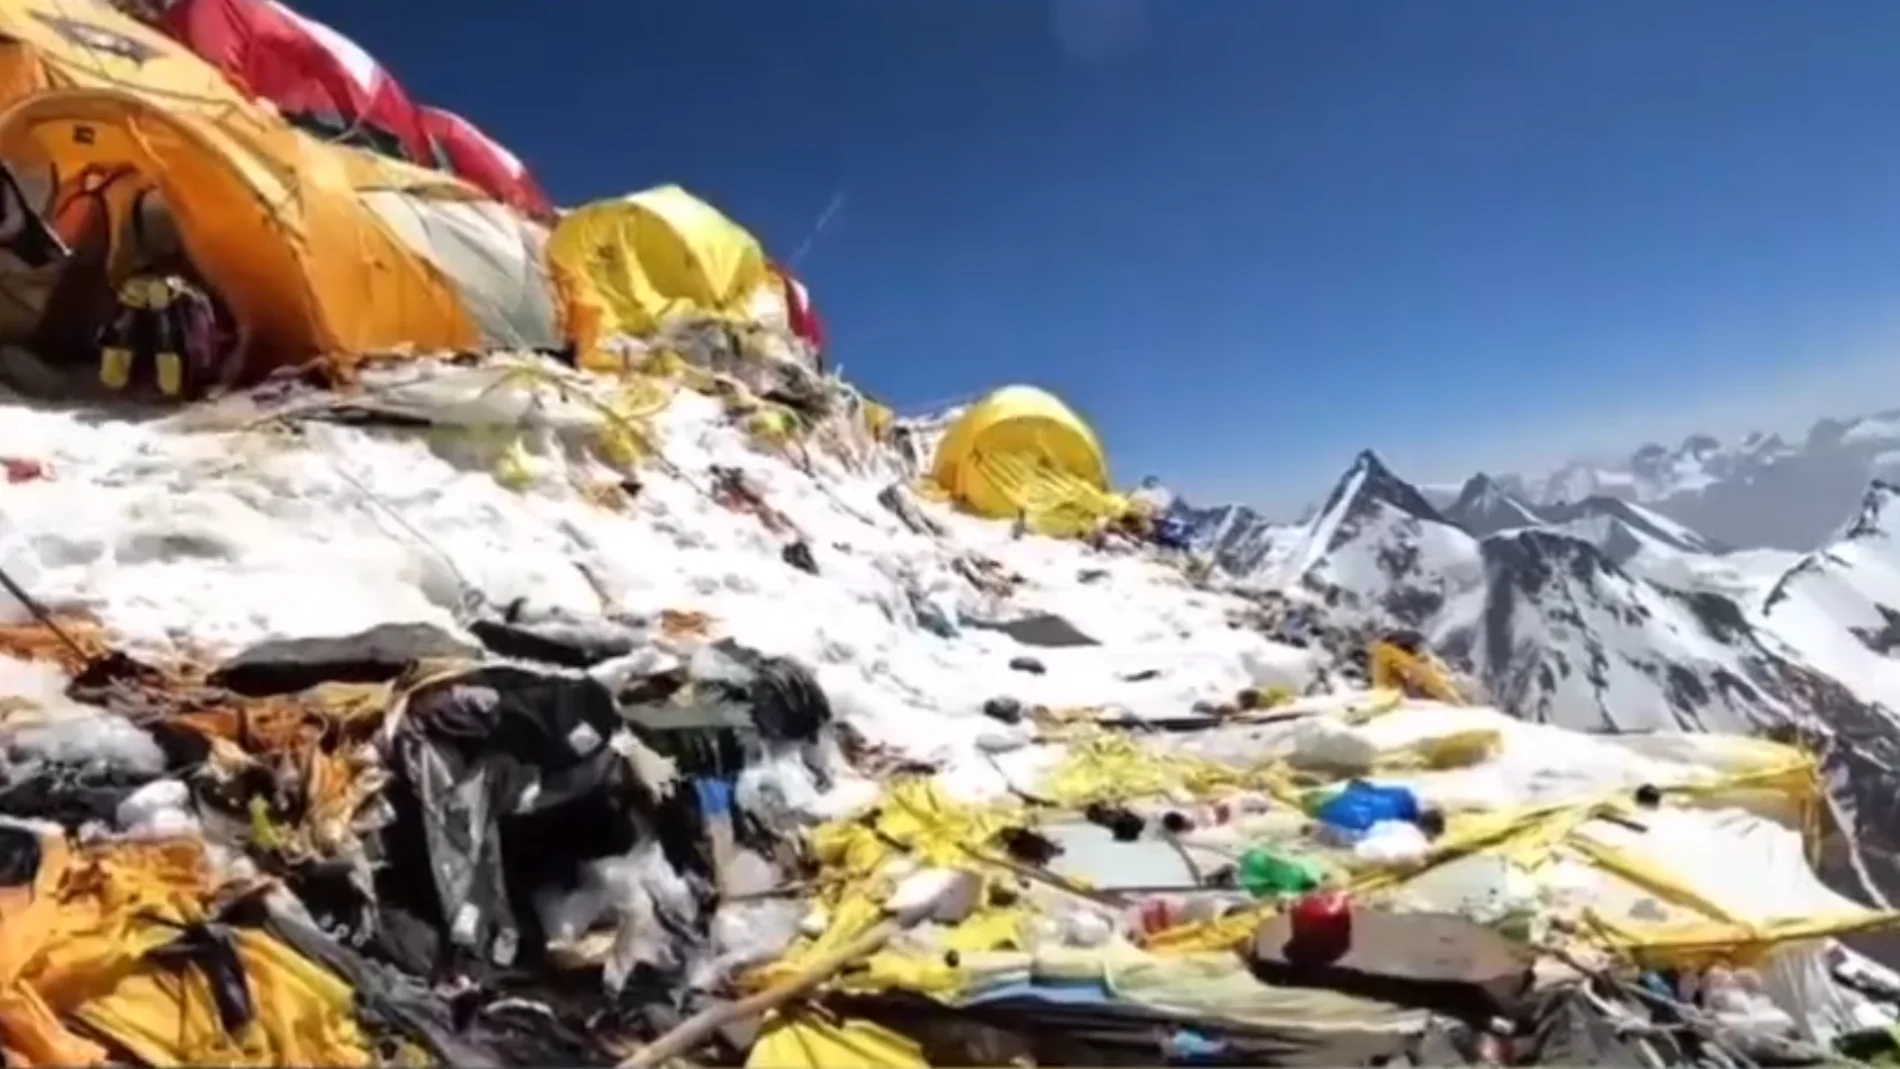 Imagen del campamento base del K2 lleno de basura